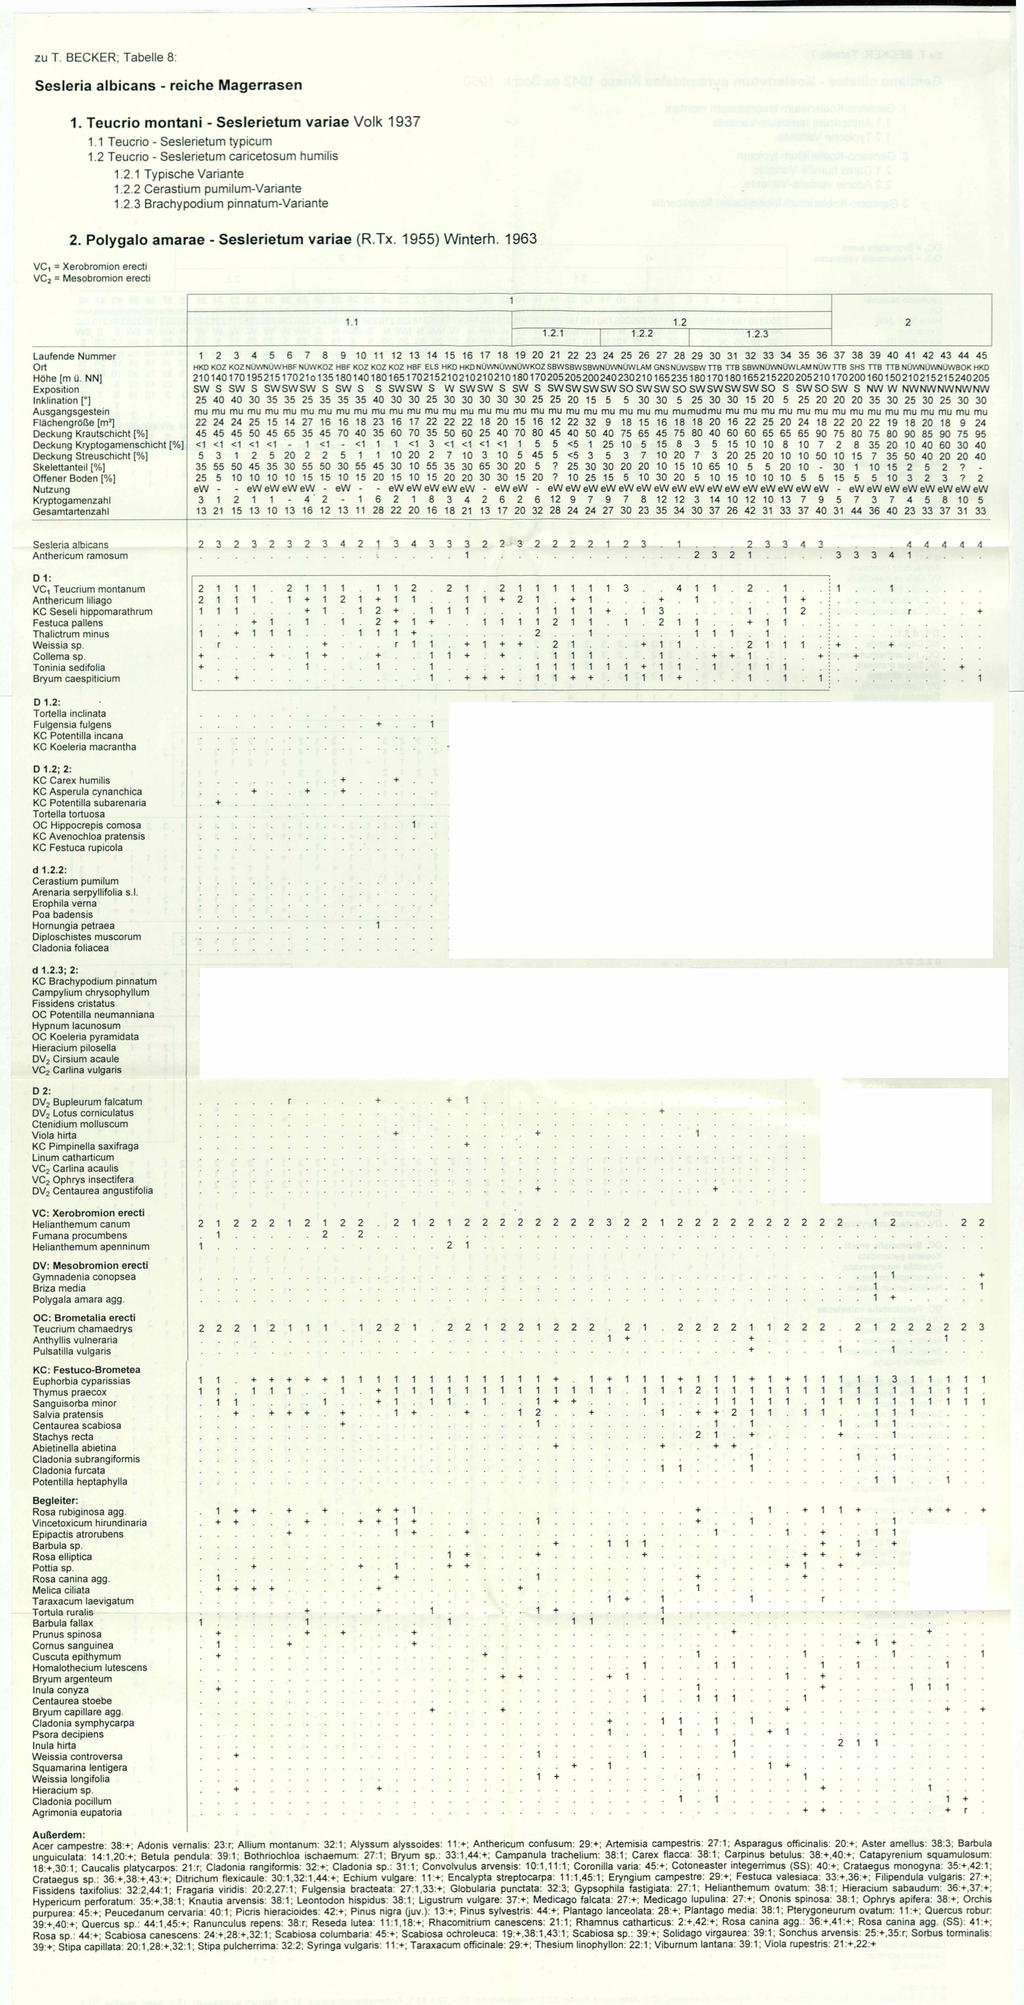 Floristisch-soziologische Arbeitsgemeinschft; wwwtuexeniade; download unter wwwzobodatat zu T BECKER; Tabelle 8: Sesleria albicans - reiche Magerrasen Teucrio montani - Seslerietum variae Volk 97